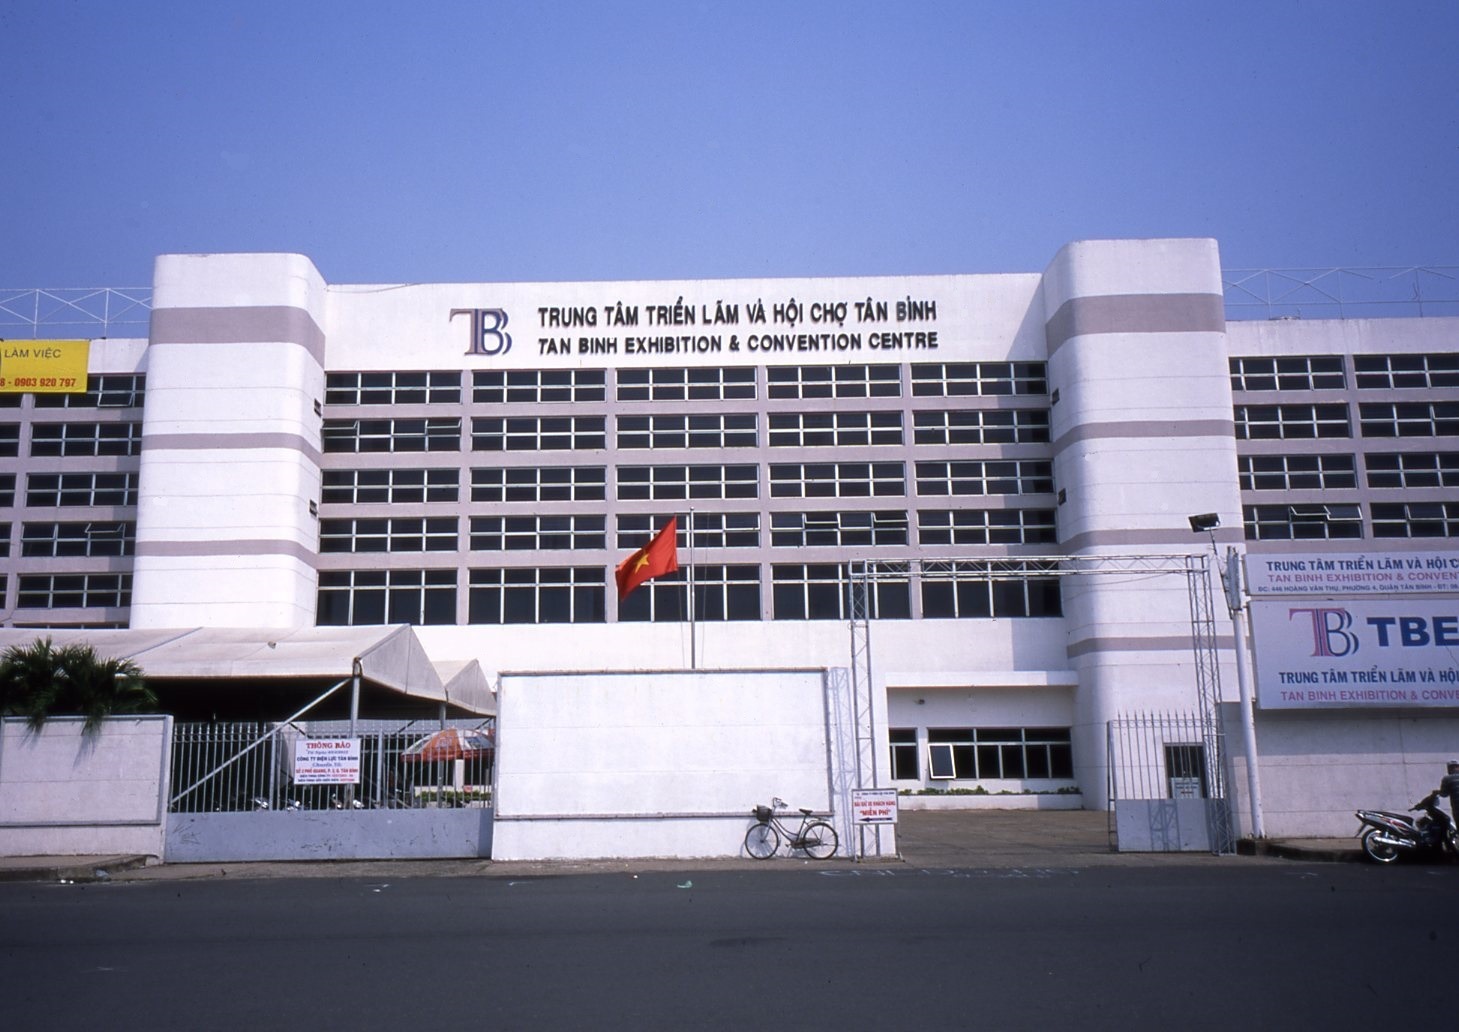 Địa điểm diễn ra triển lãm hot nhất TP HCM - Trung tâm Triển lãm và Hội chợ Tân Bình (TBECC)